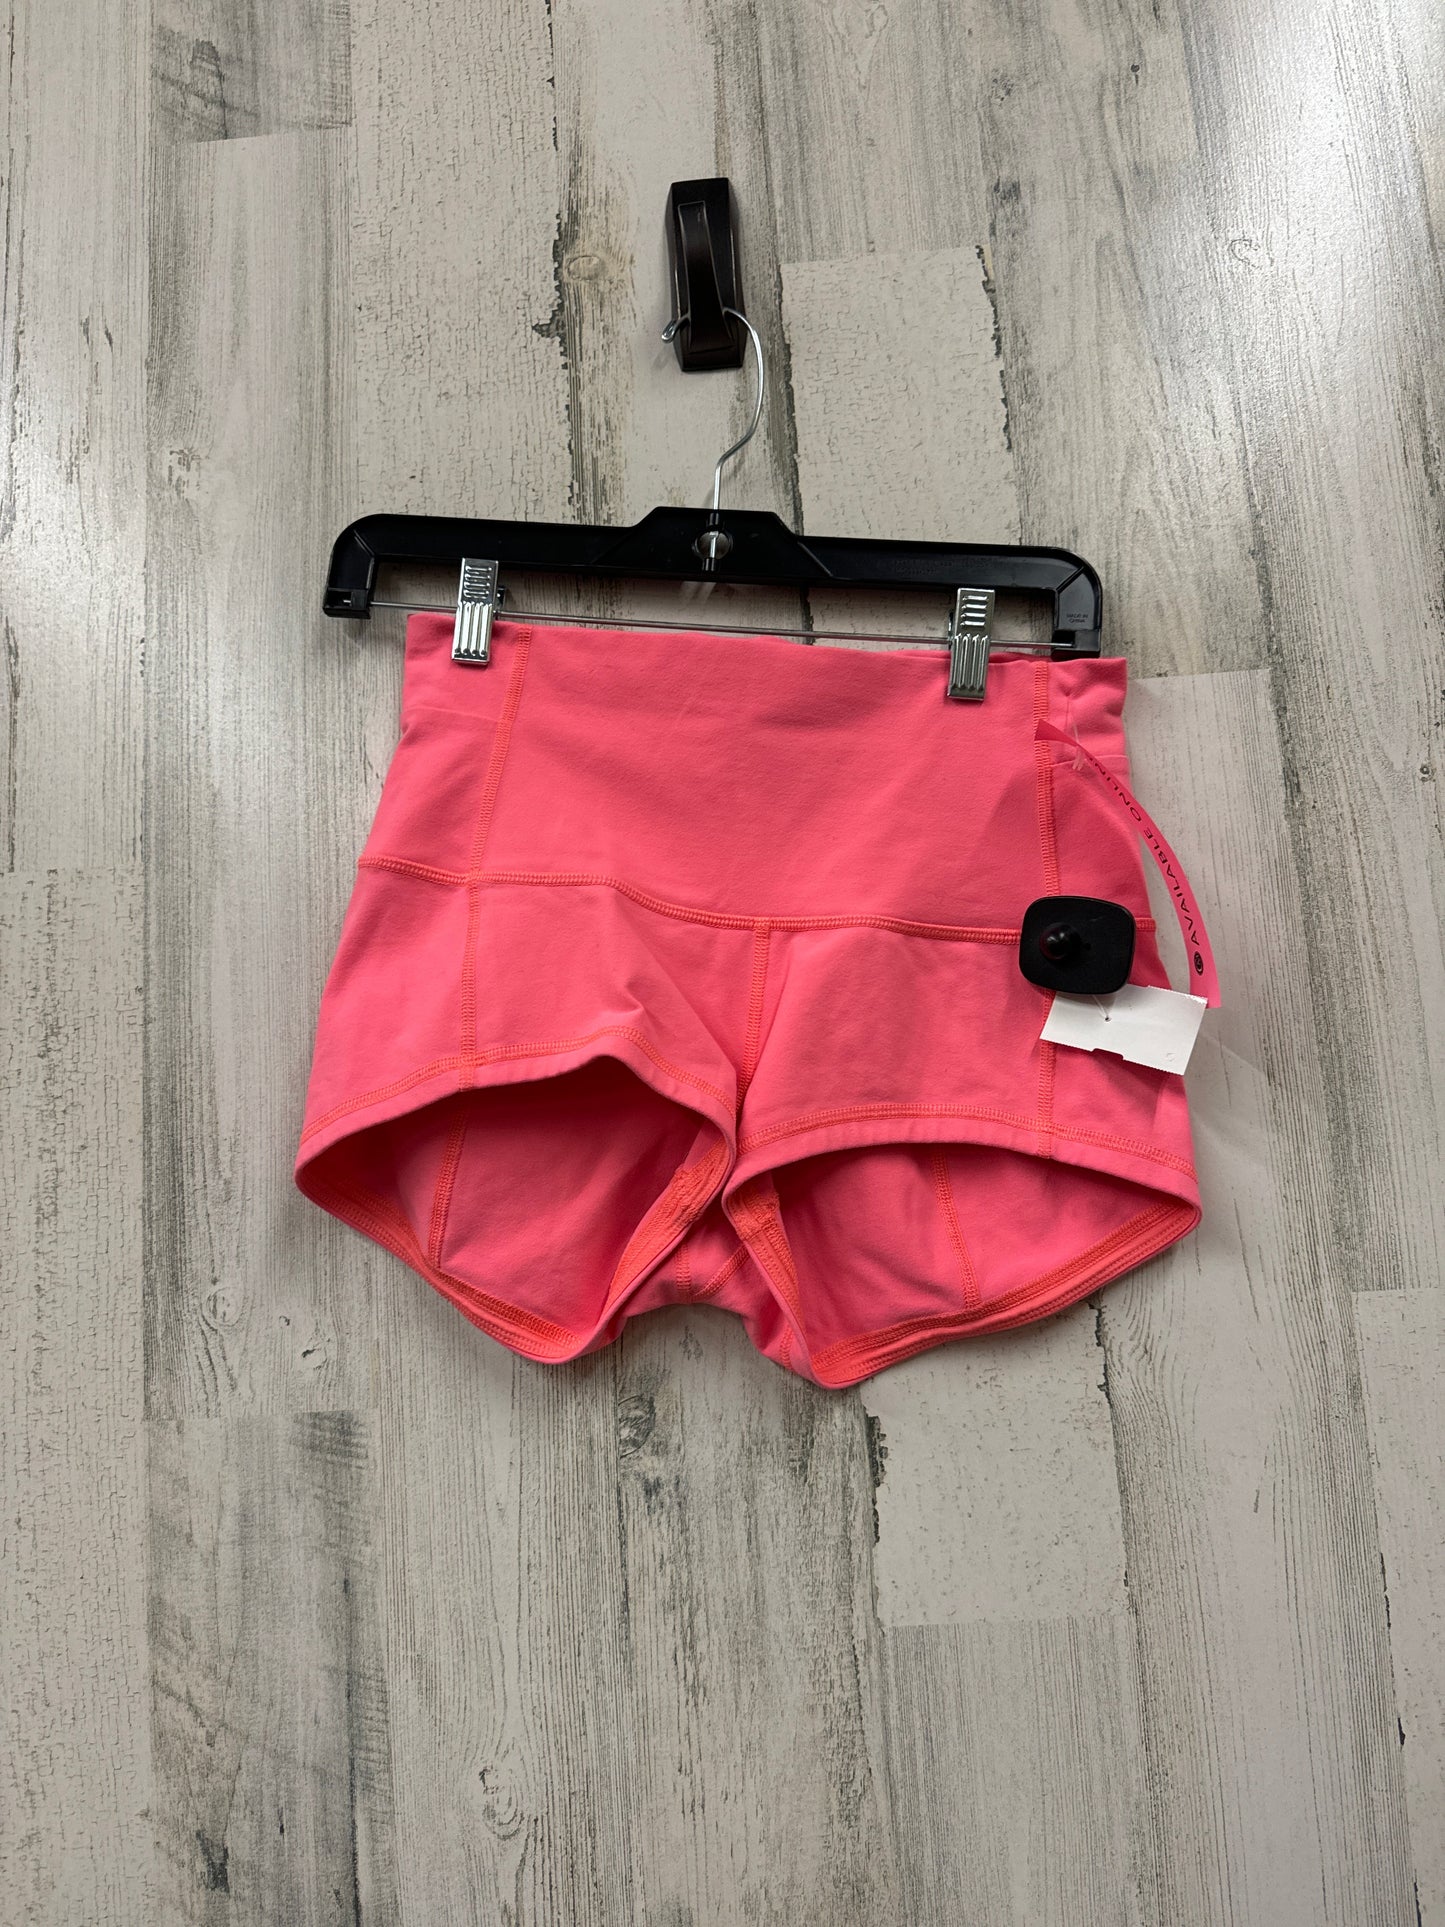 Coral Athletic Shorts Lululemon, Size 8